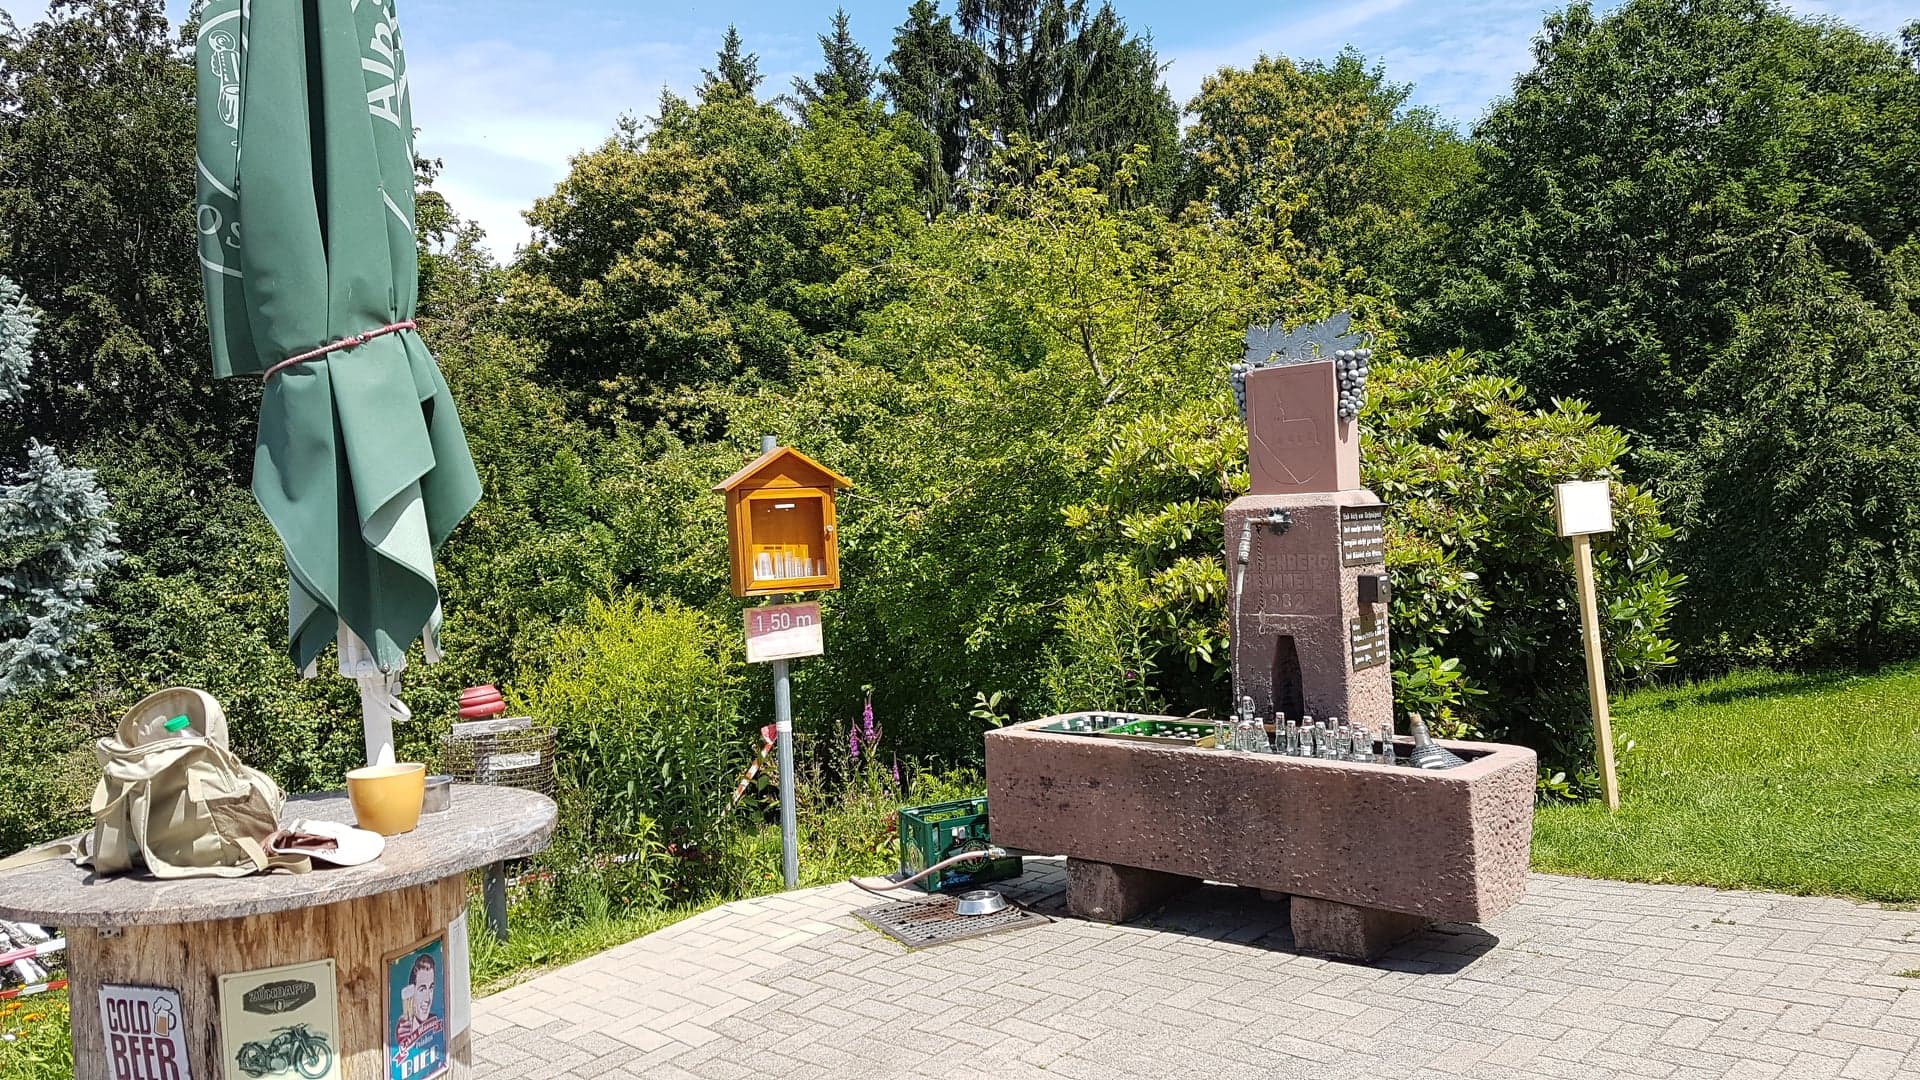 Randonnée aux fontaines à schnaps Sasbachwalden. Allemagne, 8 juillet 2020 -4